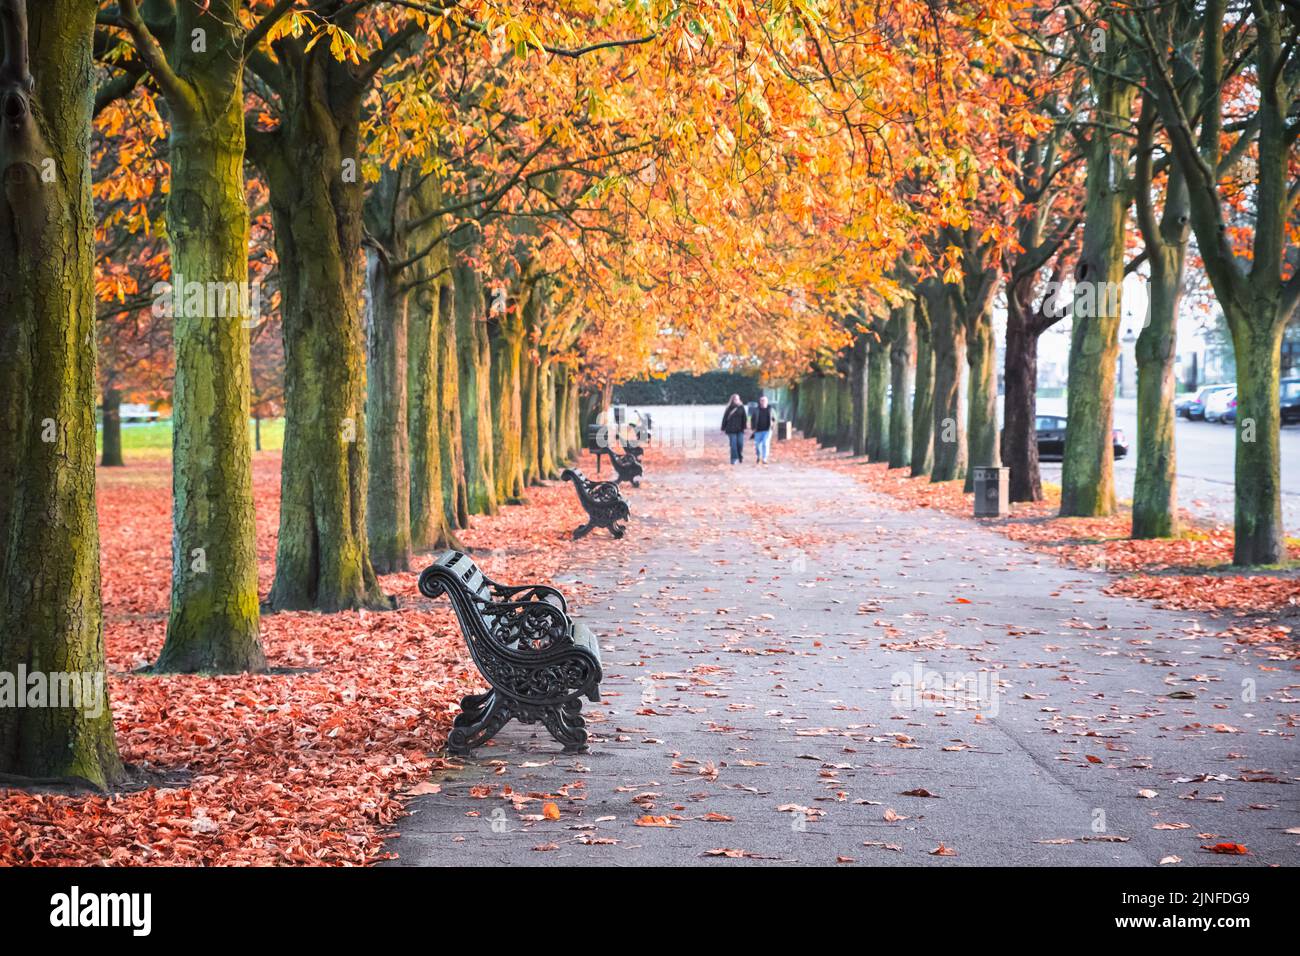 Seasonal landscape, autumn scene in Greenwich park, London Stock Photo